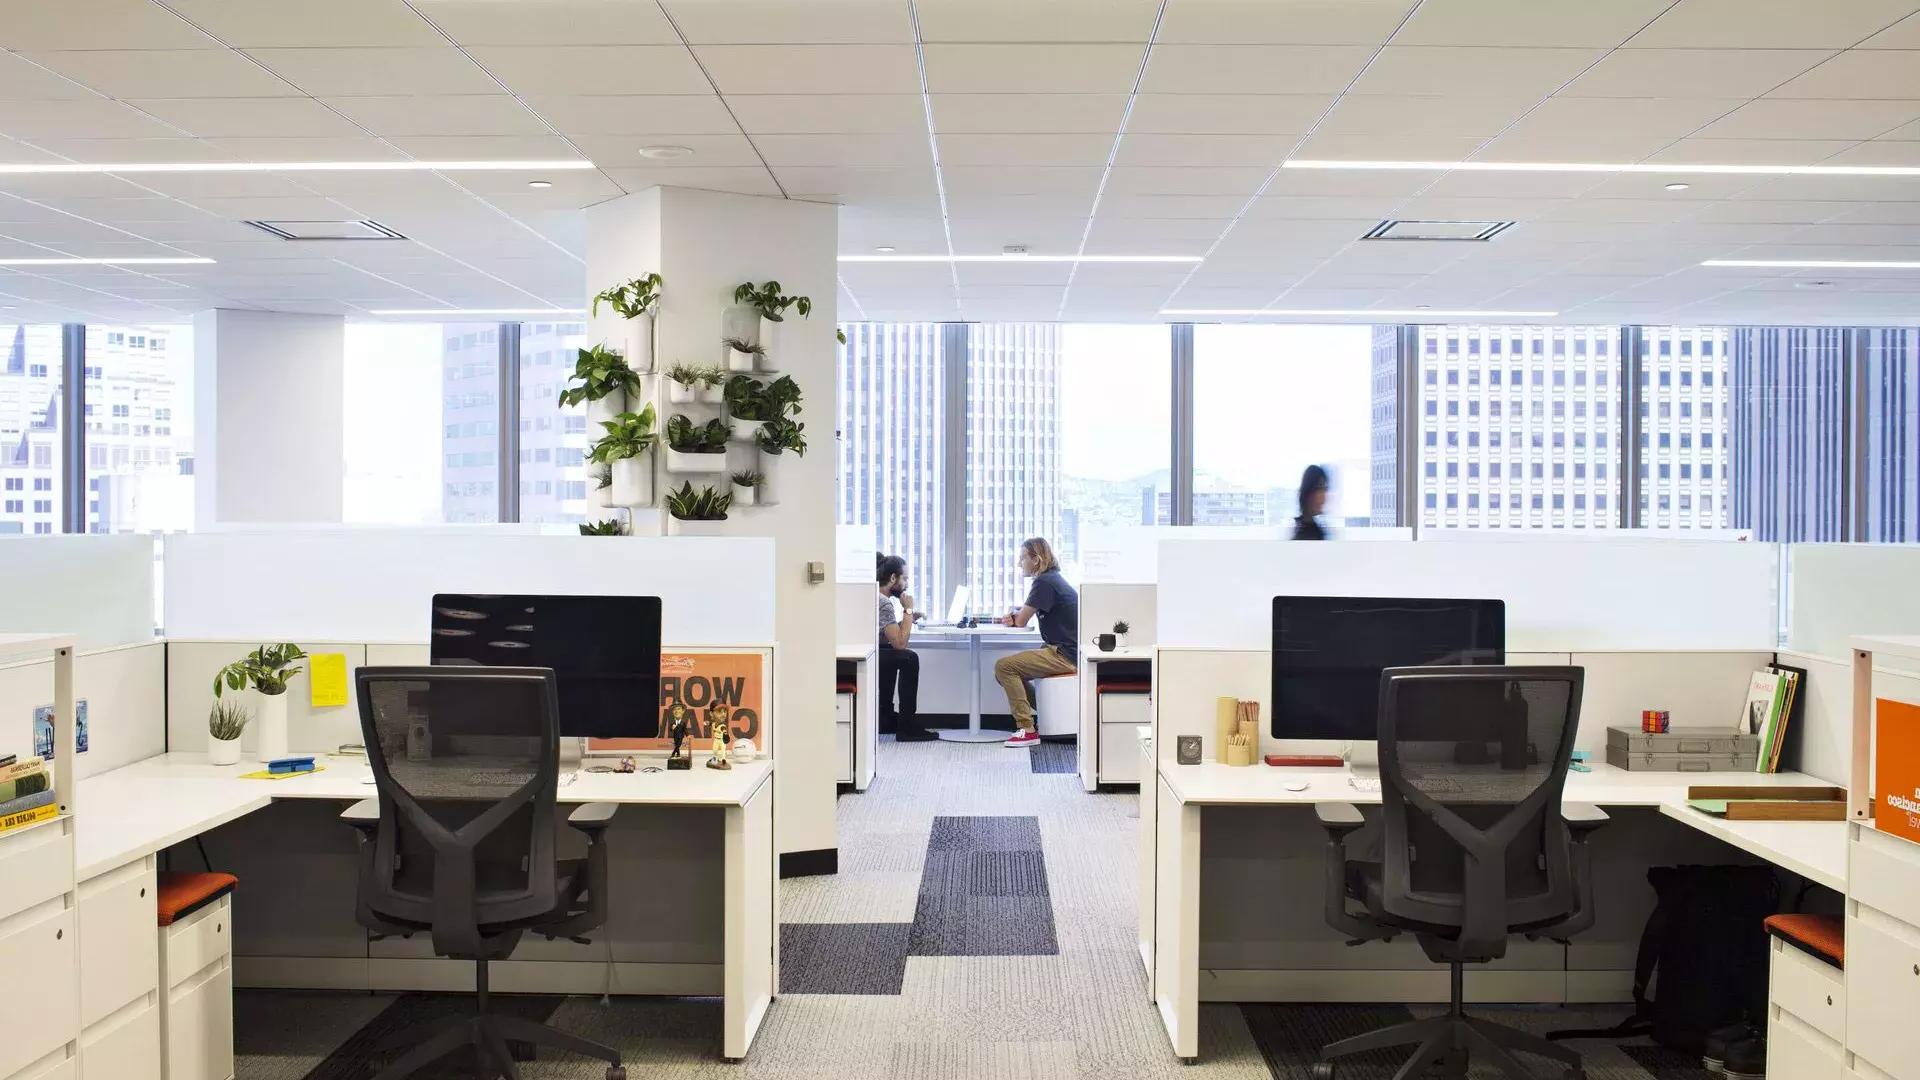 Scène d'intérieur dans un immeuble de bureaux à San Francisco, avec des bureaux au premier plan et deux personnes travaillant à une table devant de grandes fenêtres.